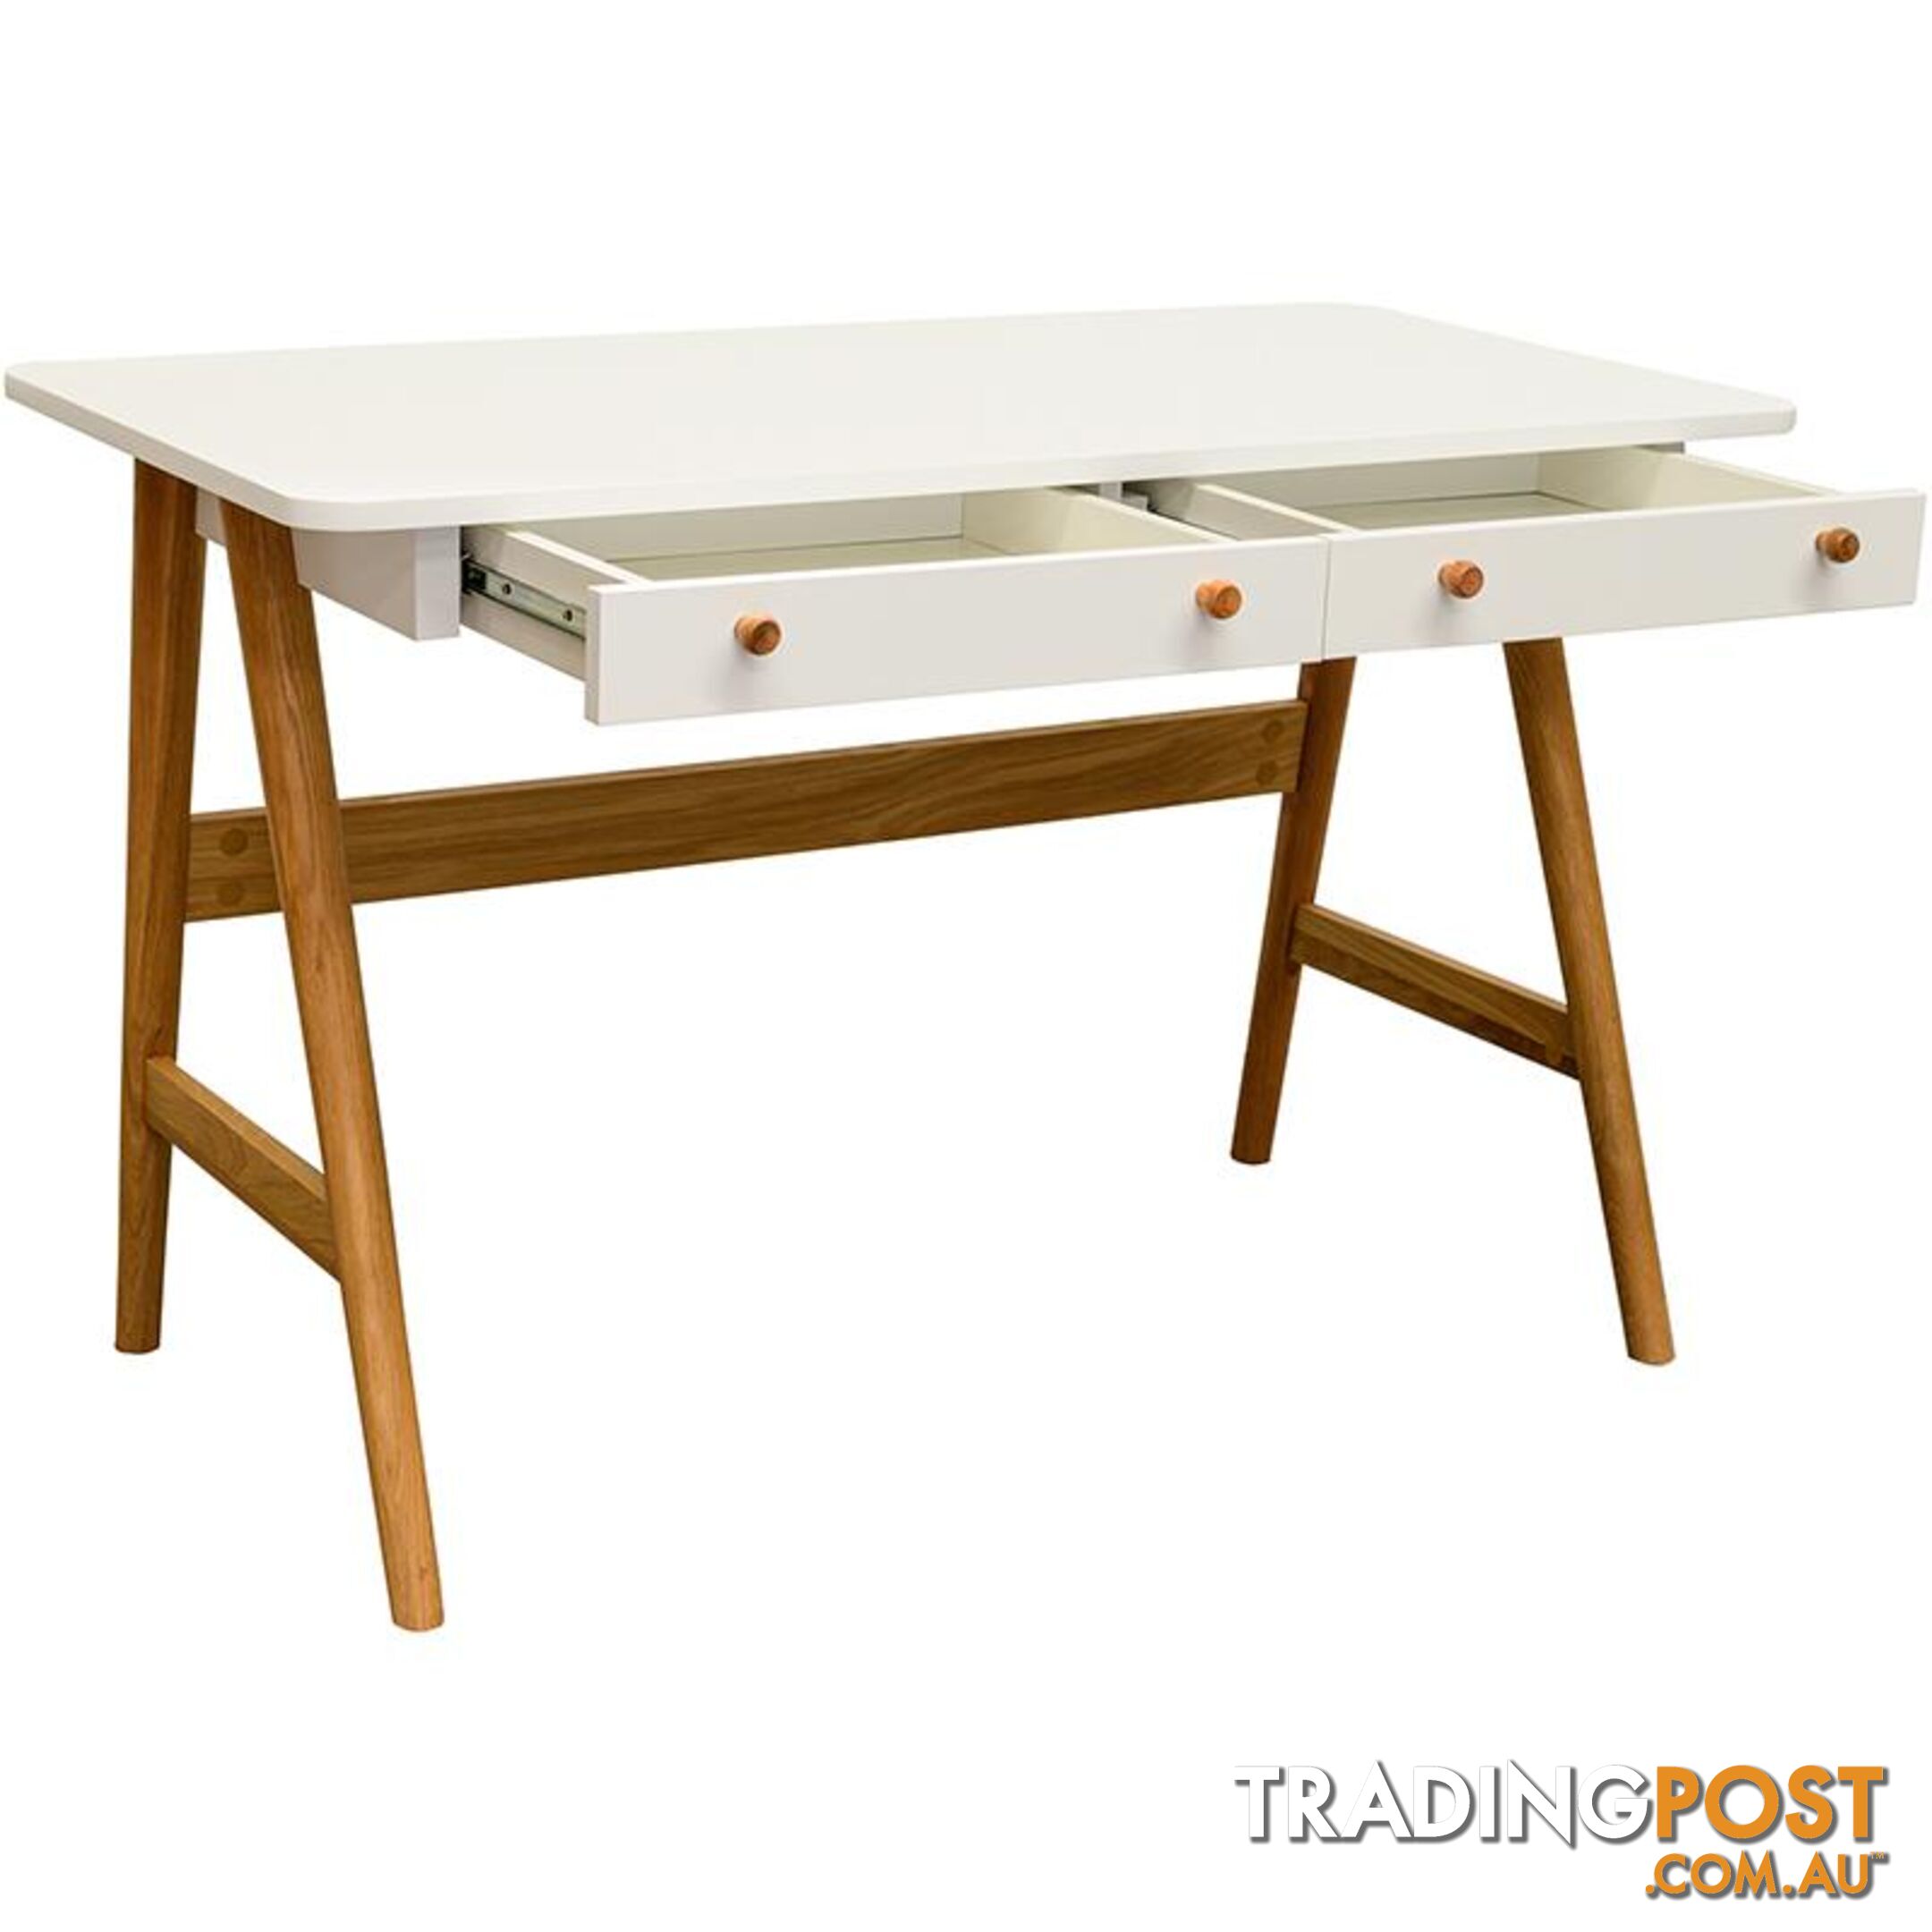 KAISU Study Desk 120cm -  White & Natural - 36472270 - 5704745068190